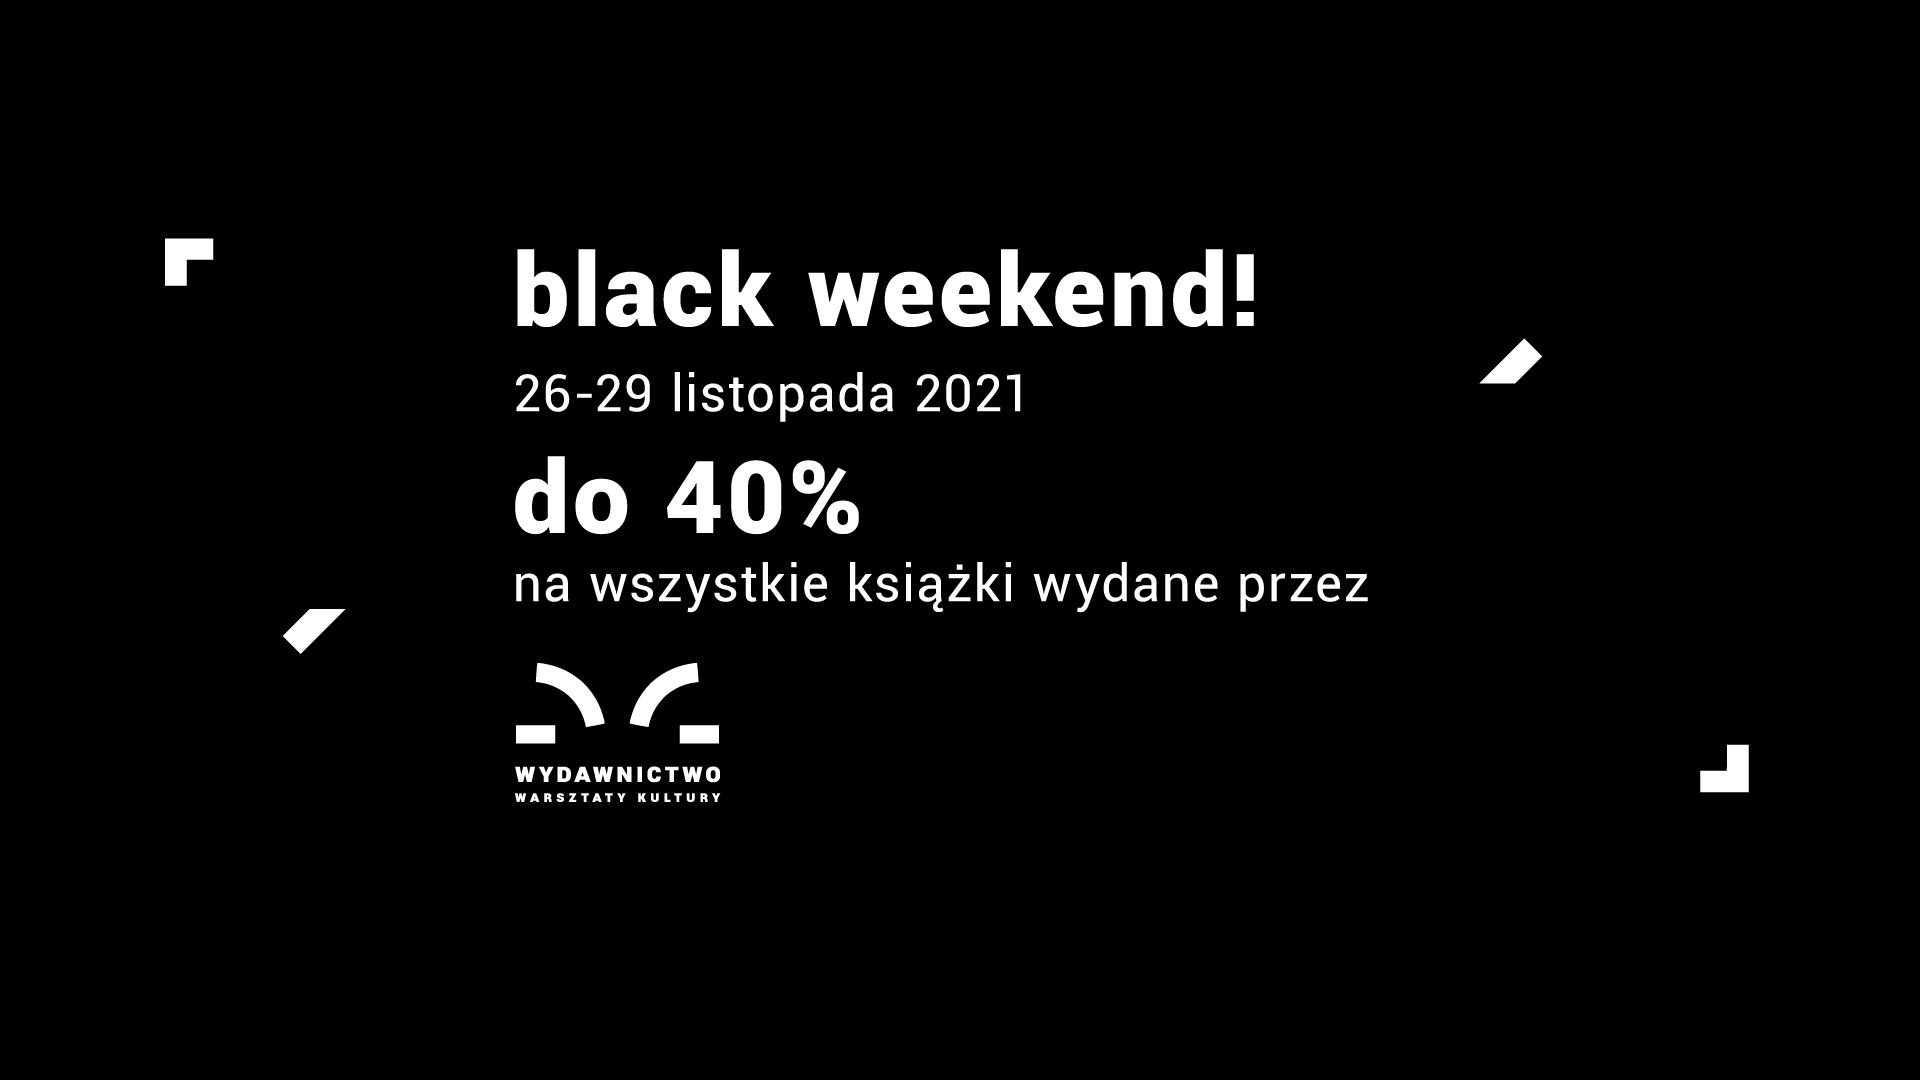 Grafika promująca "black weekend" w księgarni Warsztatów Kultury.